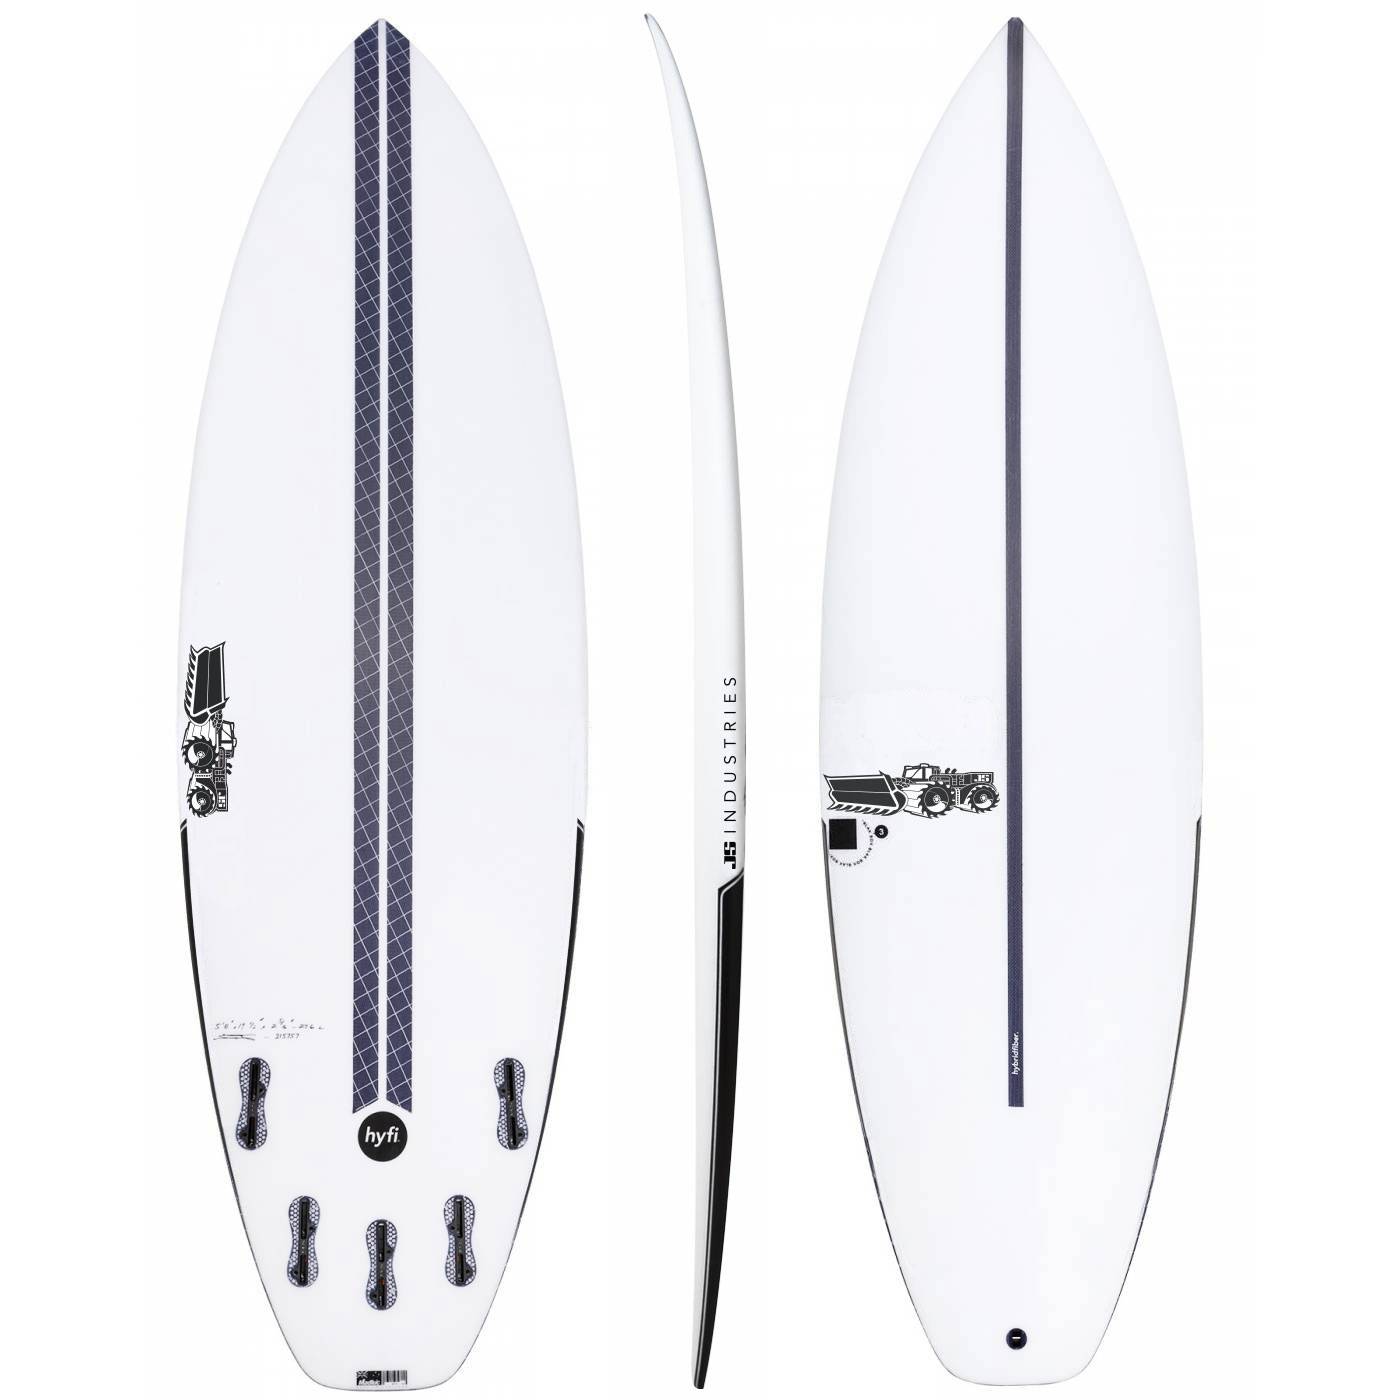 JS BLAK BOX 3 HYFI 5'10" SURFBOARD